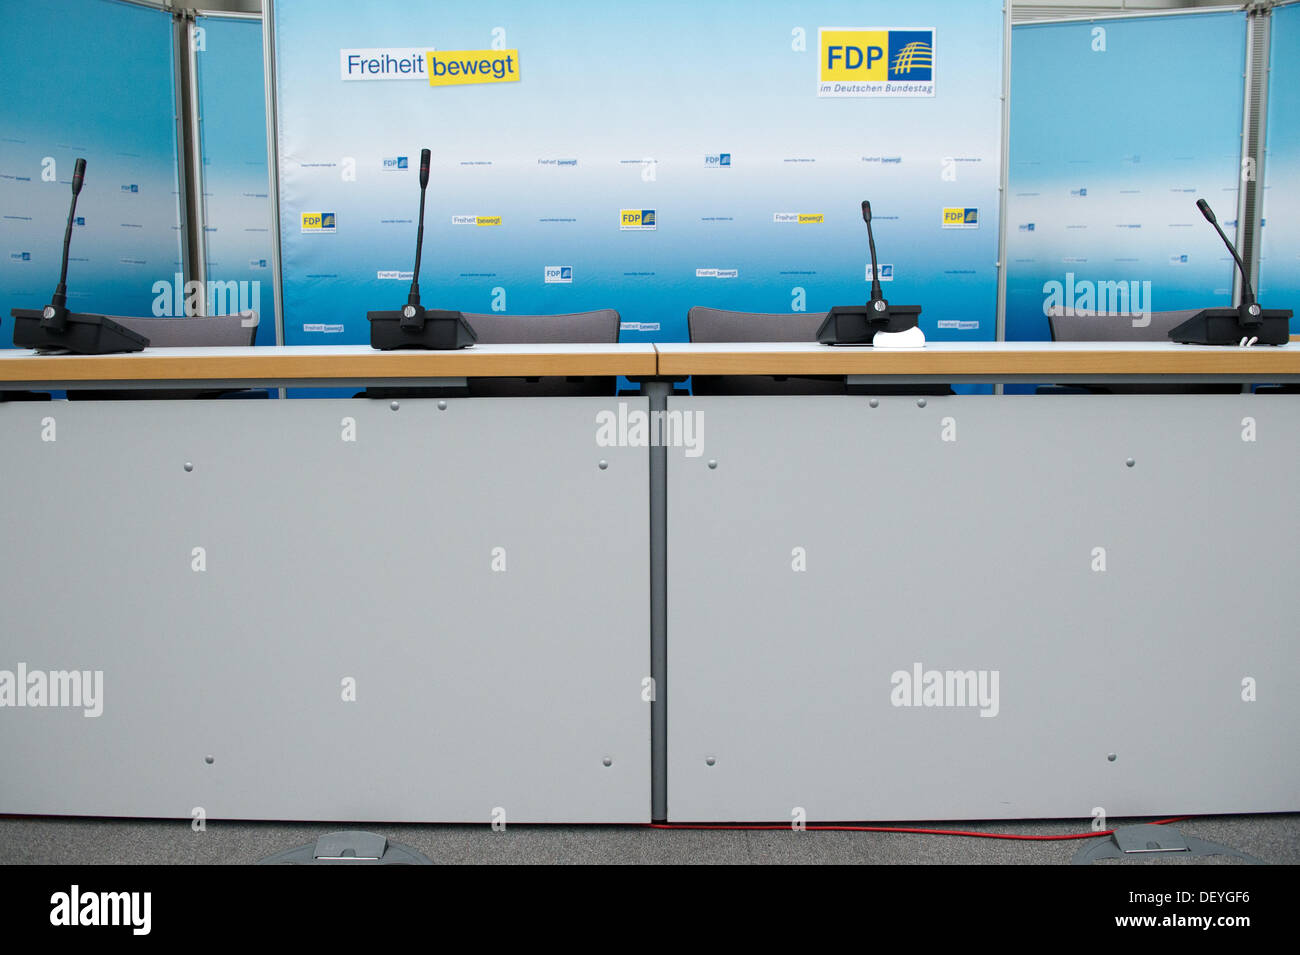 La salle de réunion de l'ancien parti parlementaire FDP (Parti libéral démocrate) est vide après les élections au Reichstag allemand en Allemagne, le 25 septembre 2013. Le FDP ne fait plus partie du parlement allemand. Photo : MAURIZIO GAMBARINI Banque D'Images